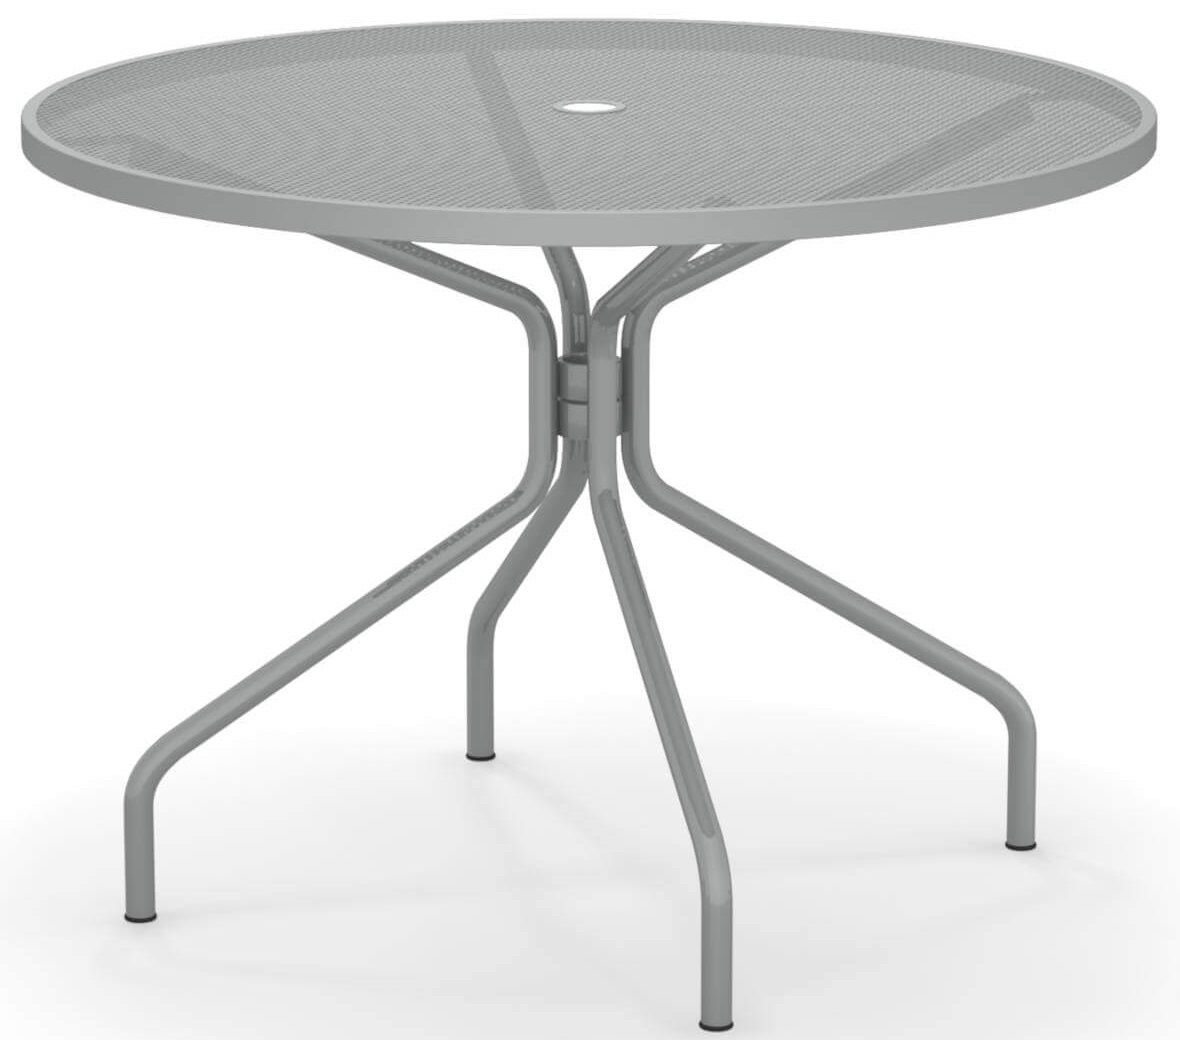 Emu designové zahradní stoly Cambi Round Table (průměr 106 cm) - DESIGNPROPAGANDA